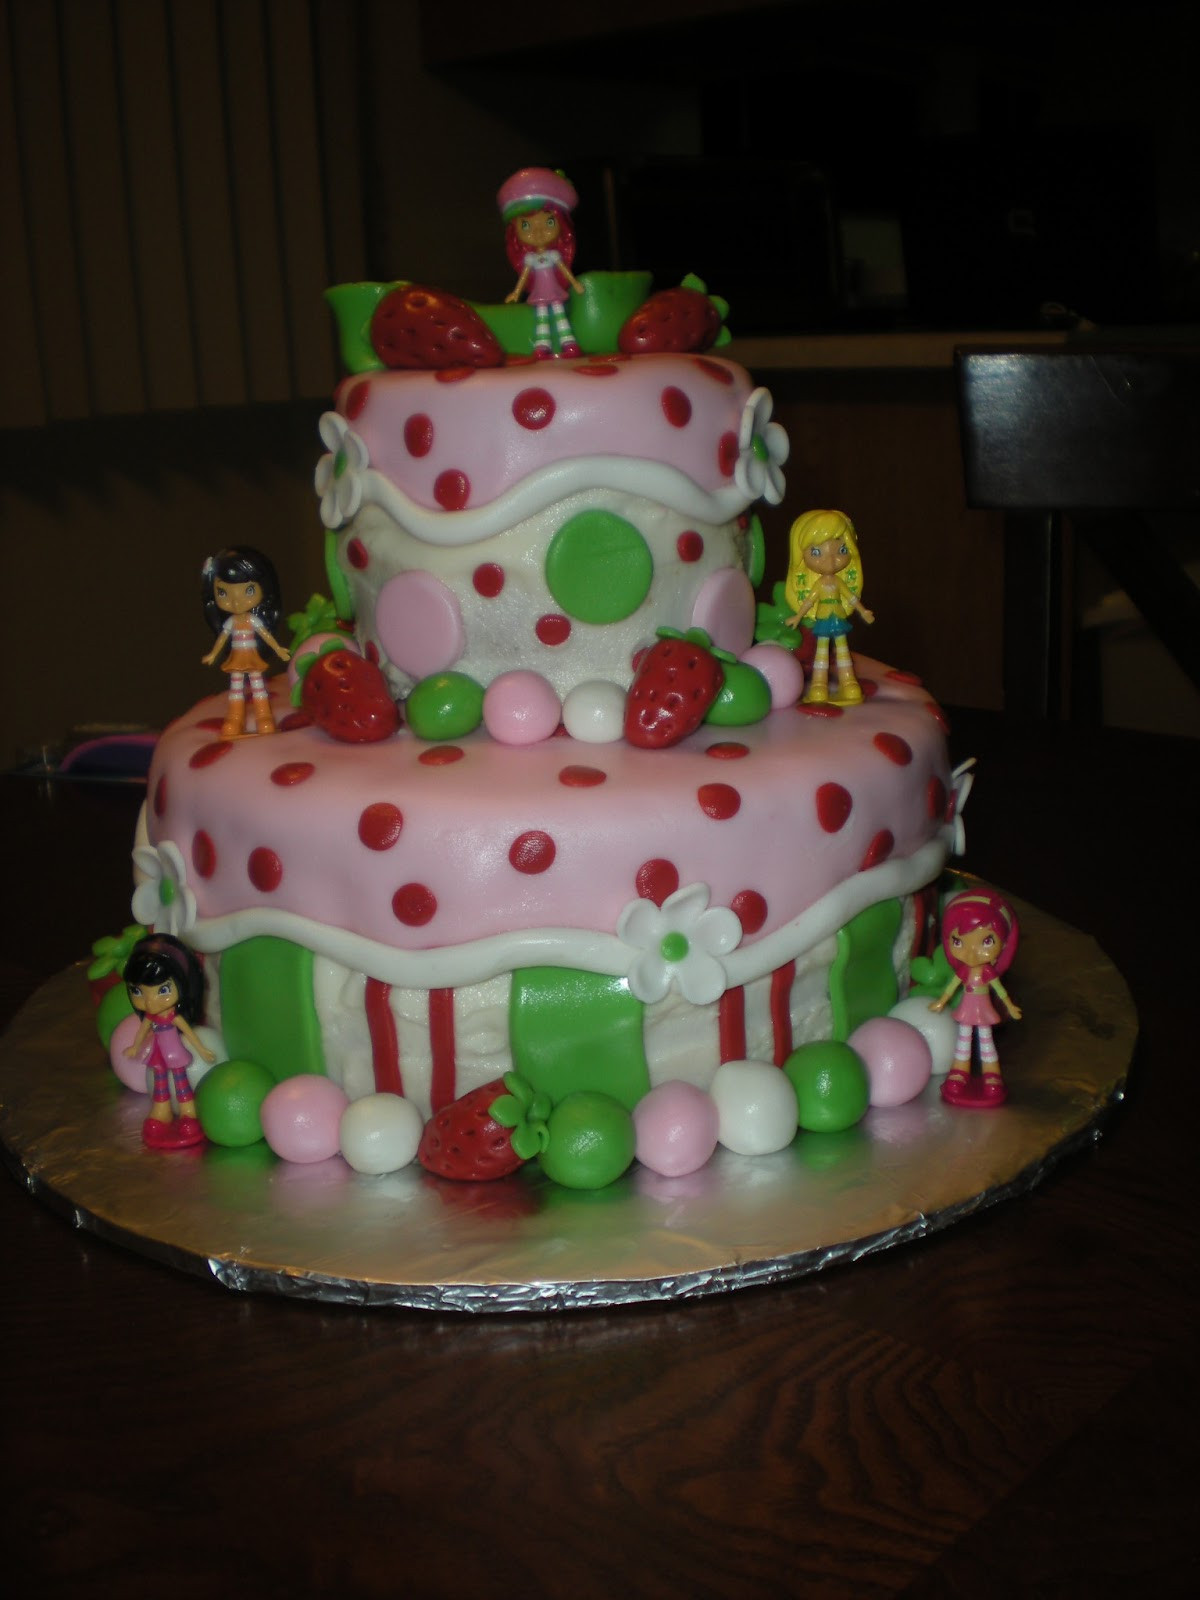 Strawberry Shortcake Birthday Cake
 Carlynne s Cakes Strawberry Shortcake Birthday Cake